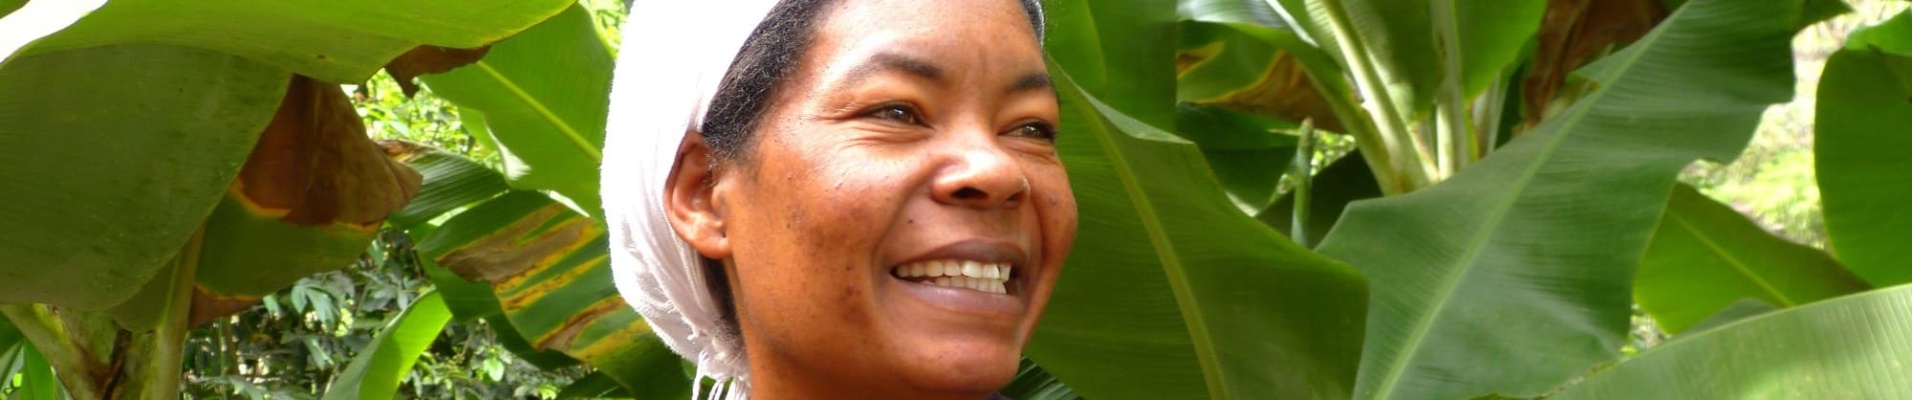 Portrait de femme - Village d'Aguada - Santo Antao - Cap-Vert